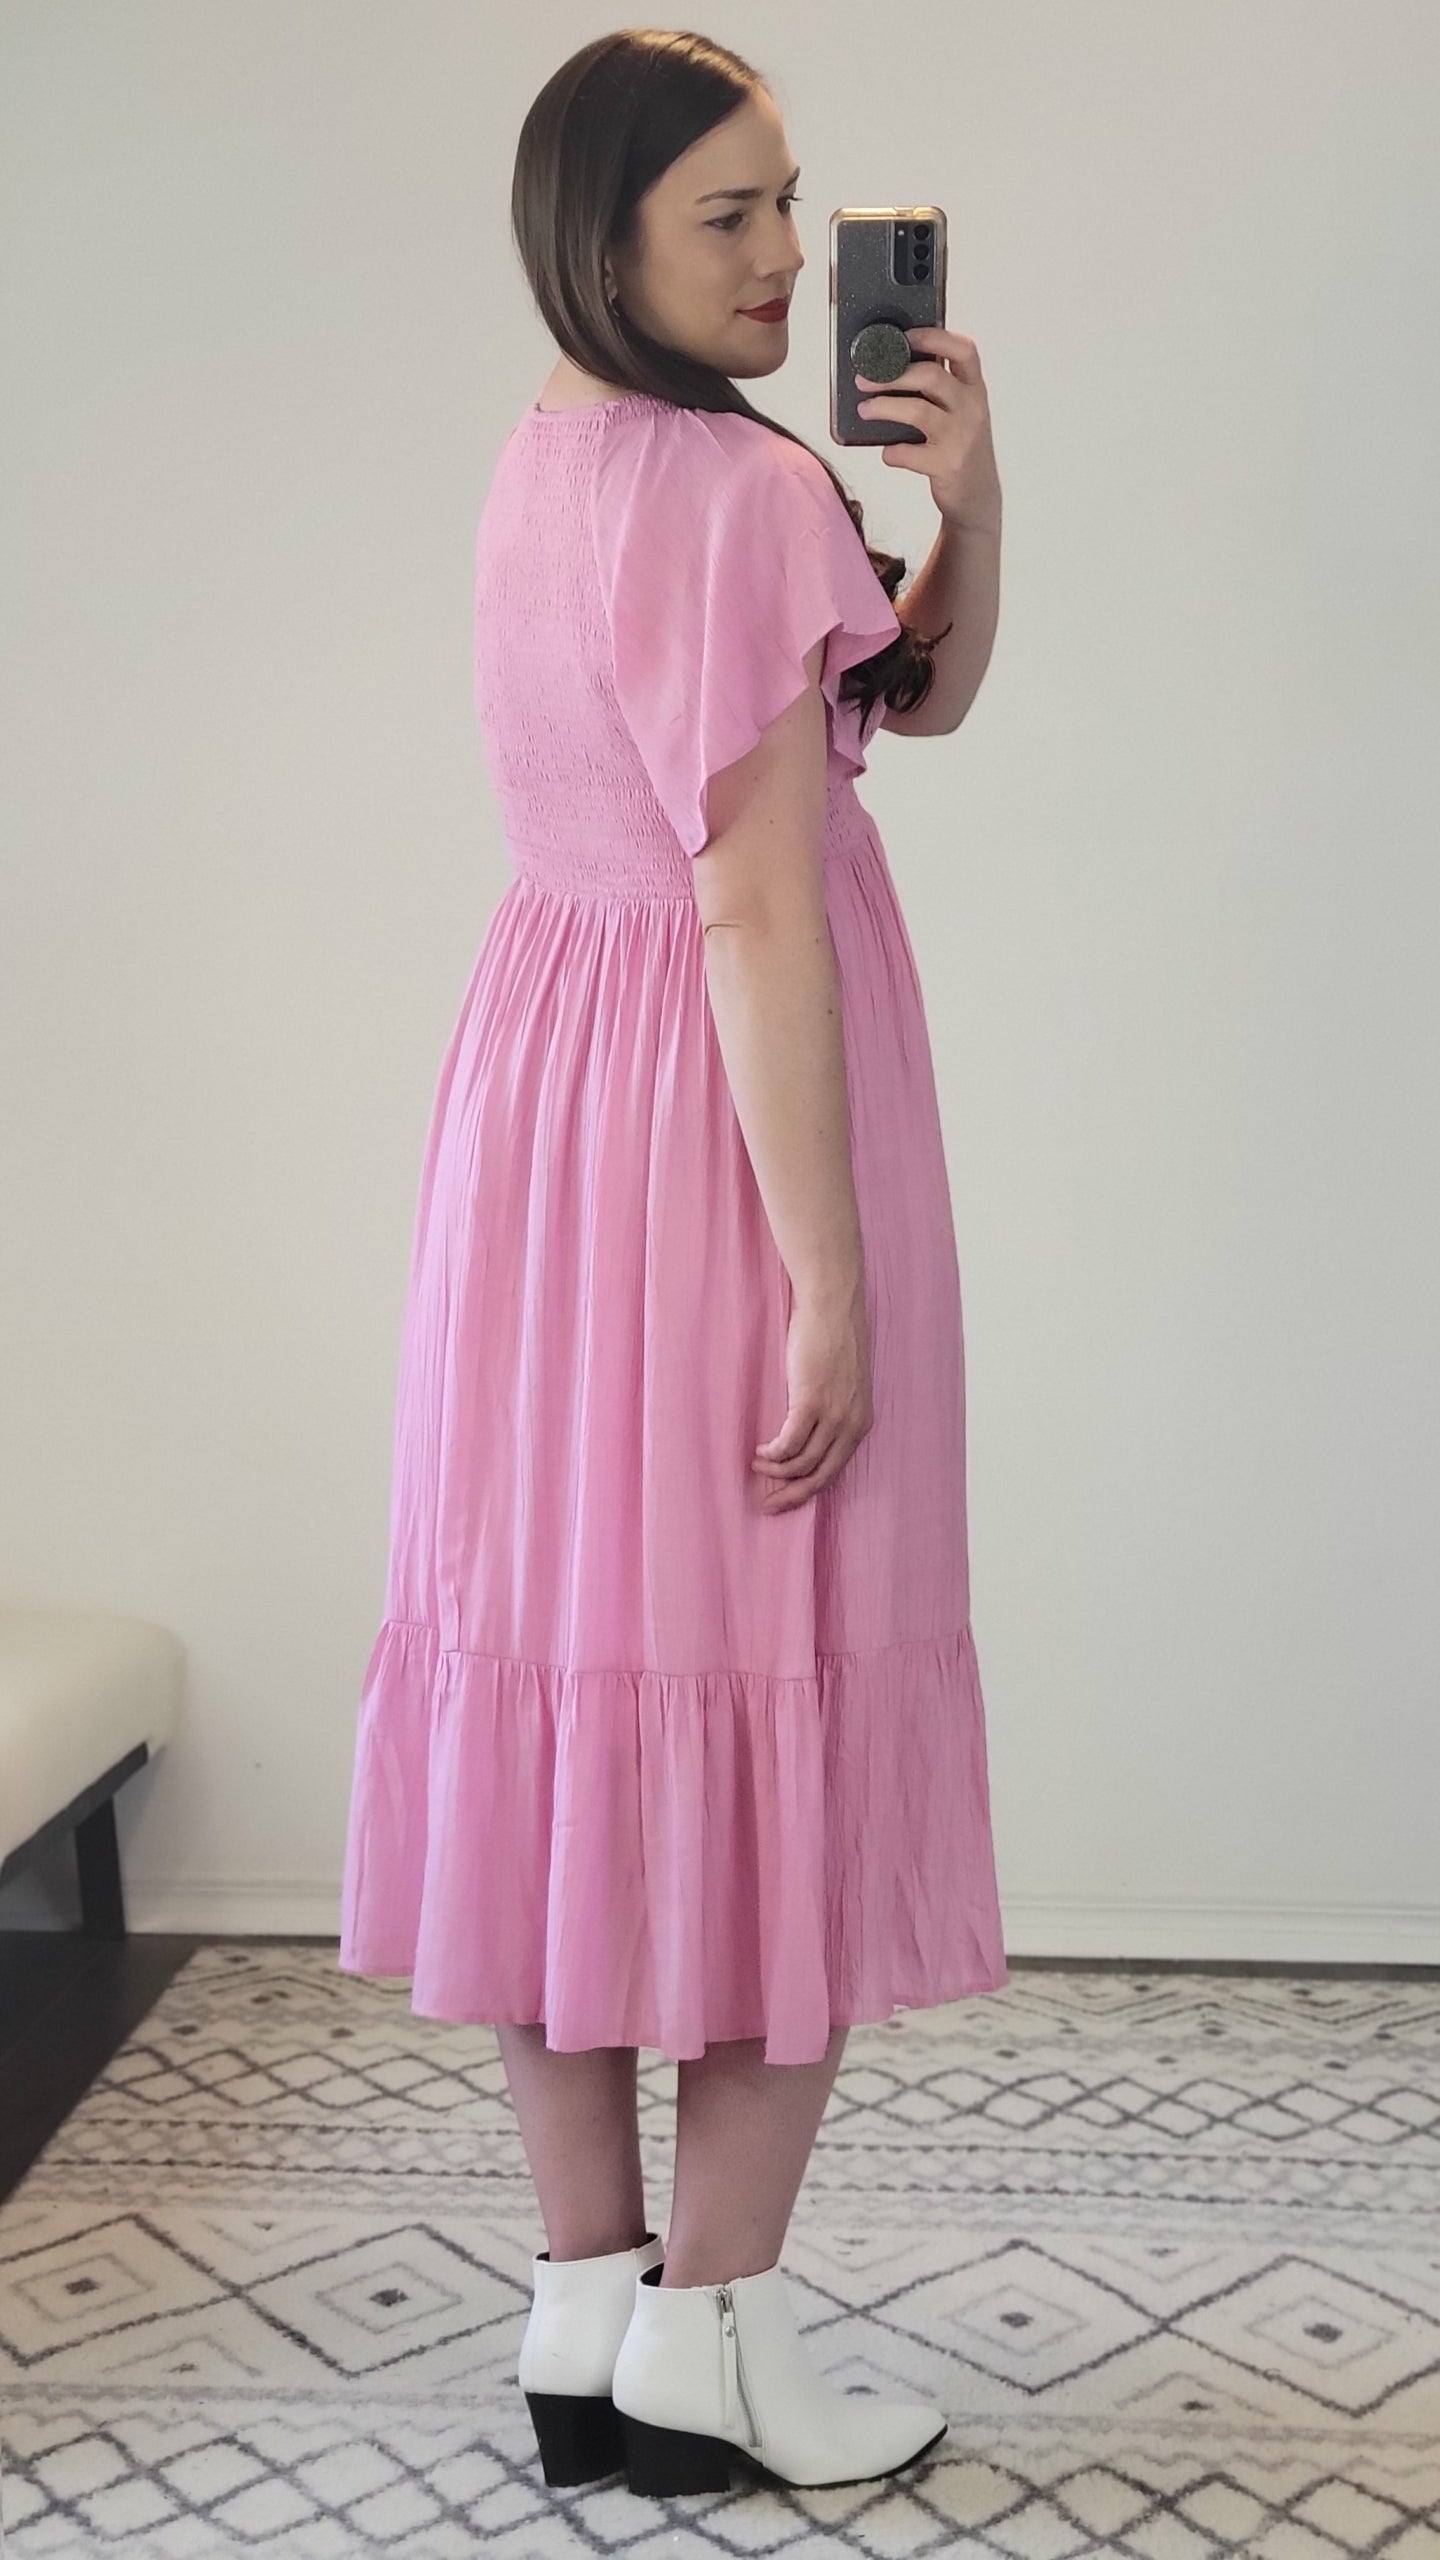 Pink V-Neck Smocked Ruffle Sleeve Midi Dress with Pockets “Bree” 